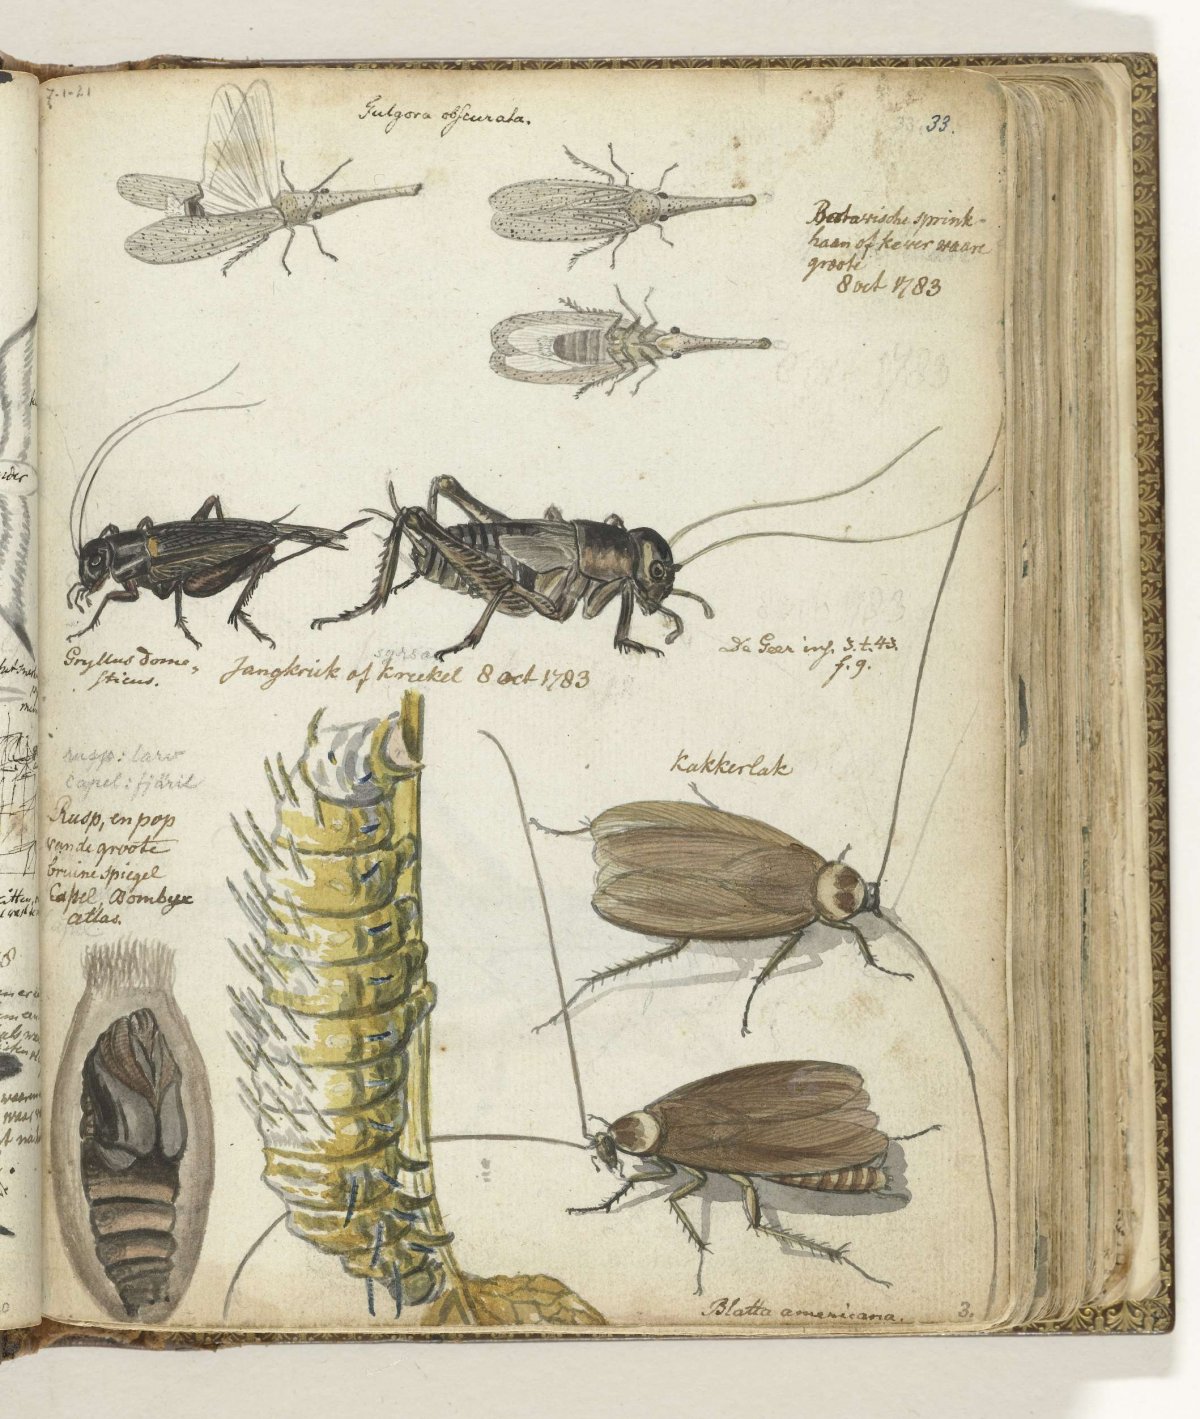 Insecten, Jan Brandes, 1783